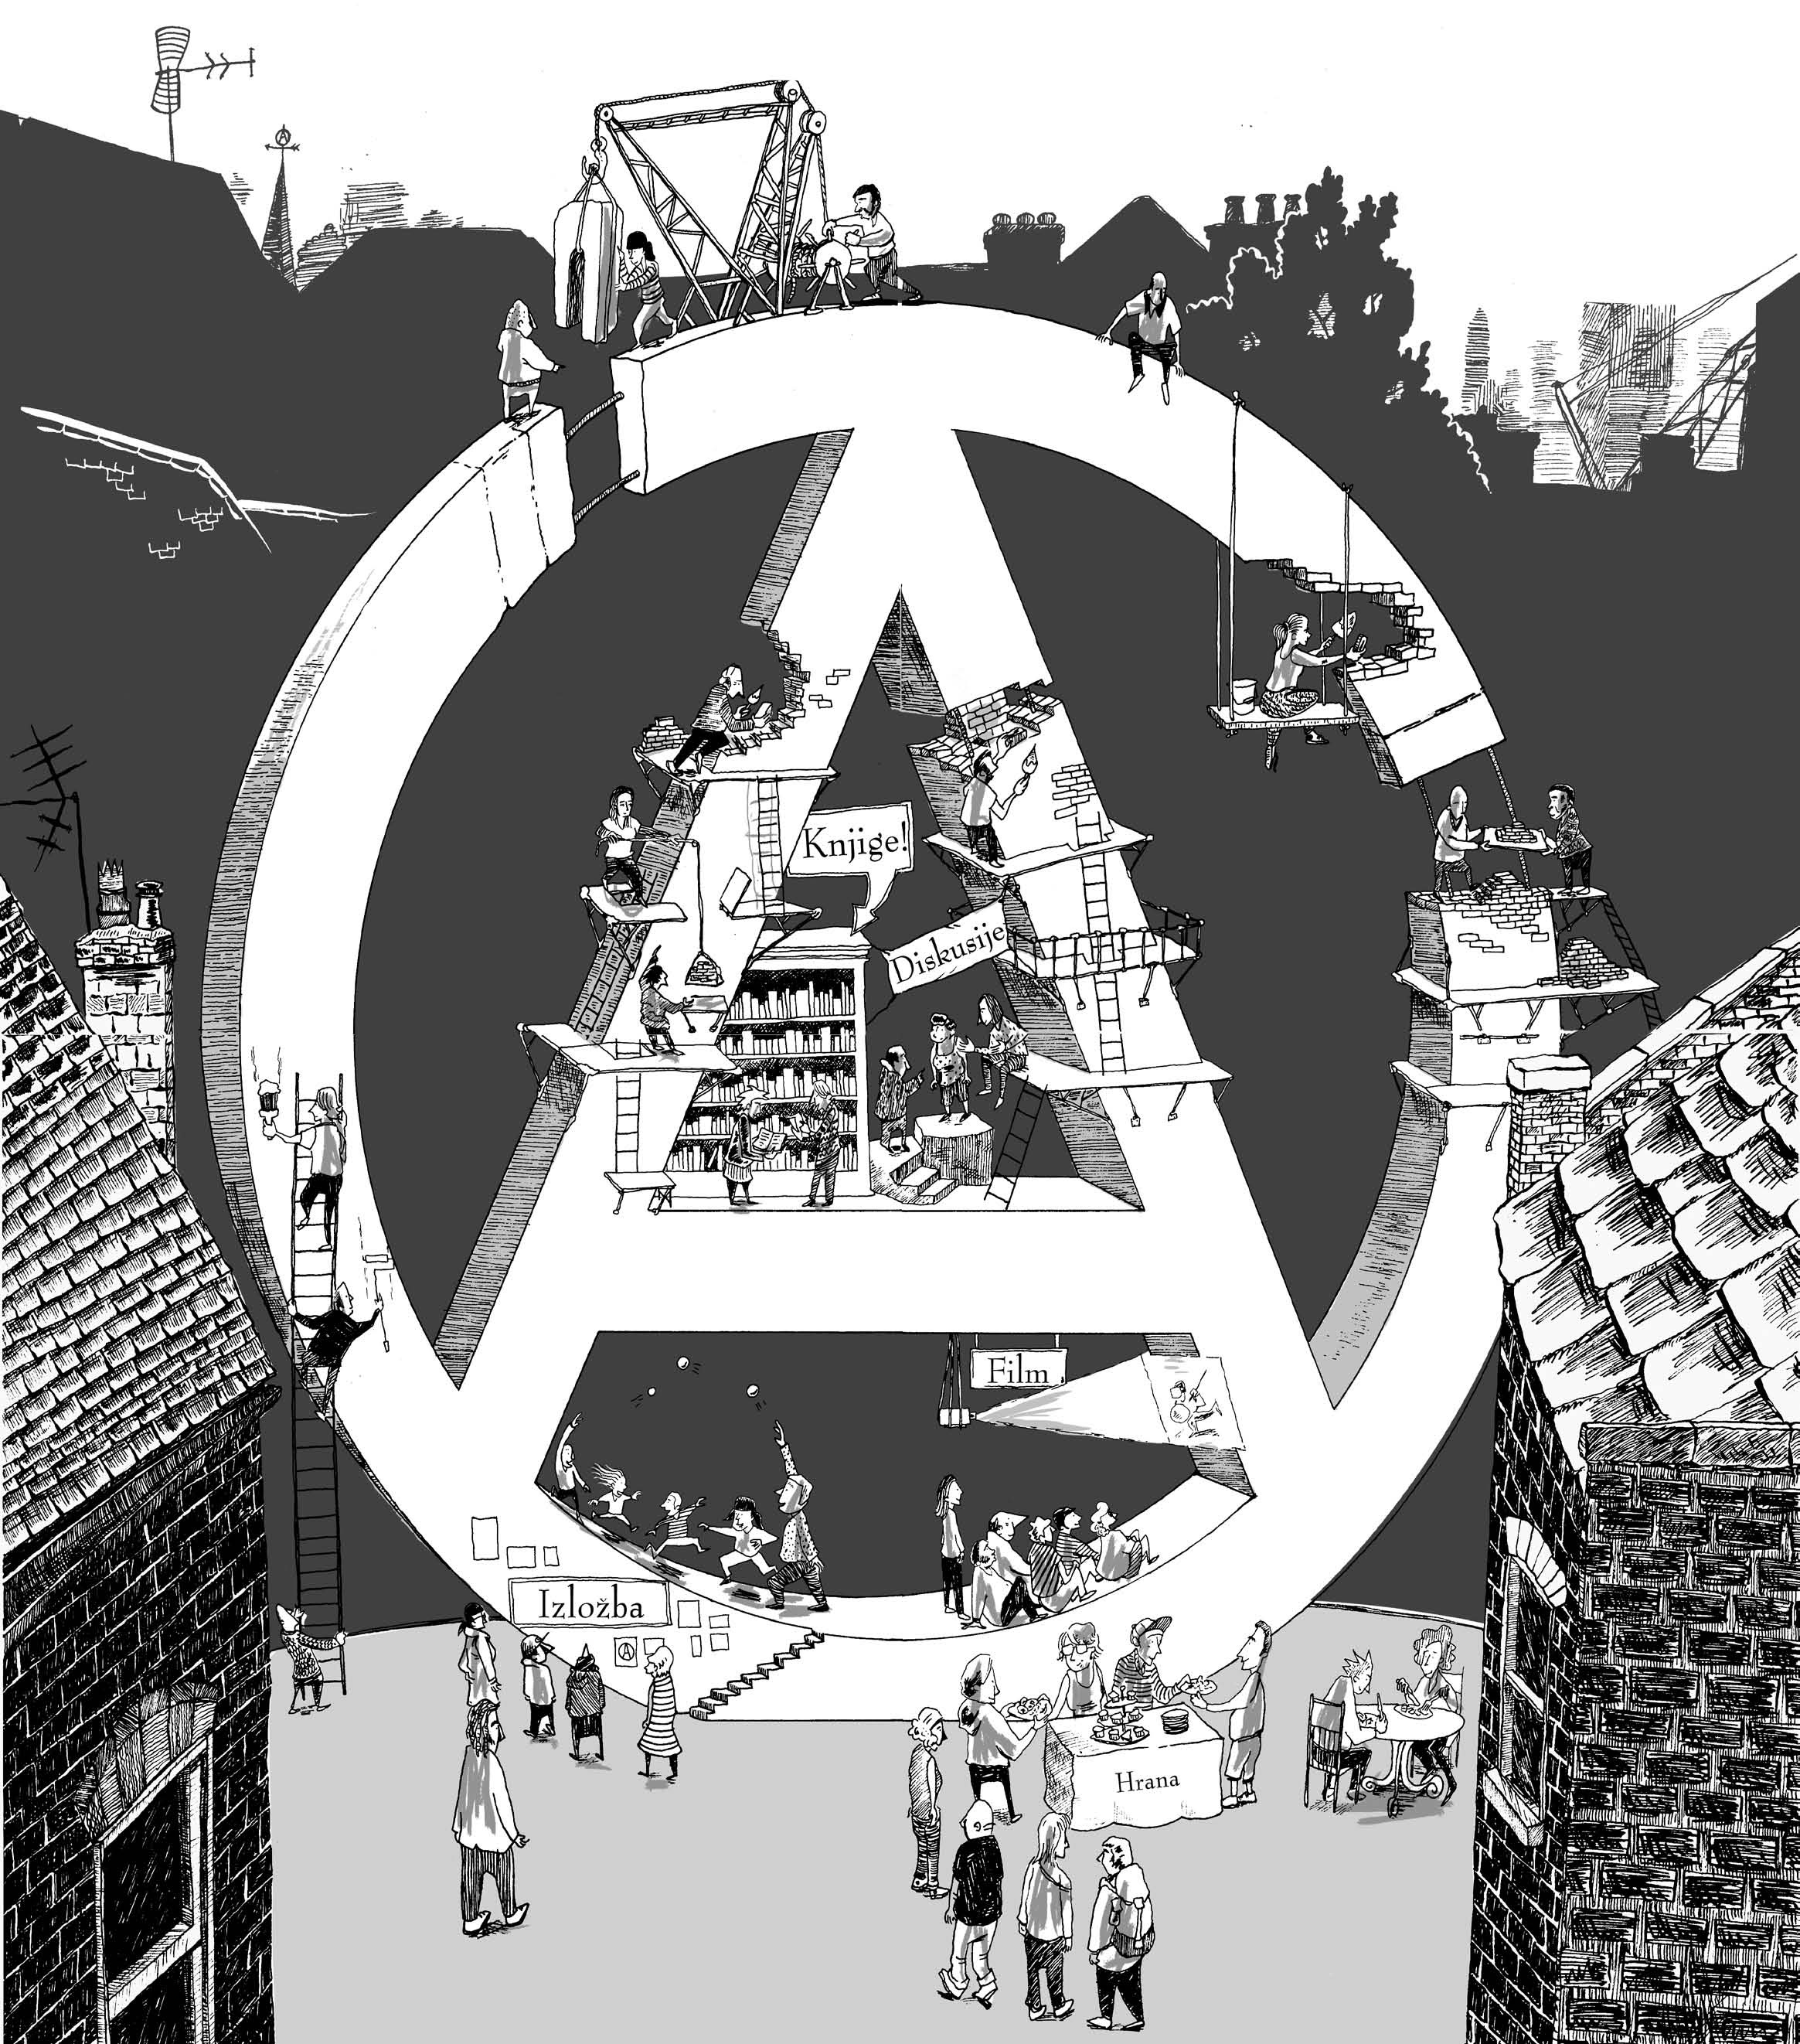 anarchist-bookfair-zagreb-2013